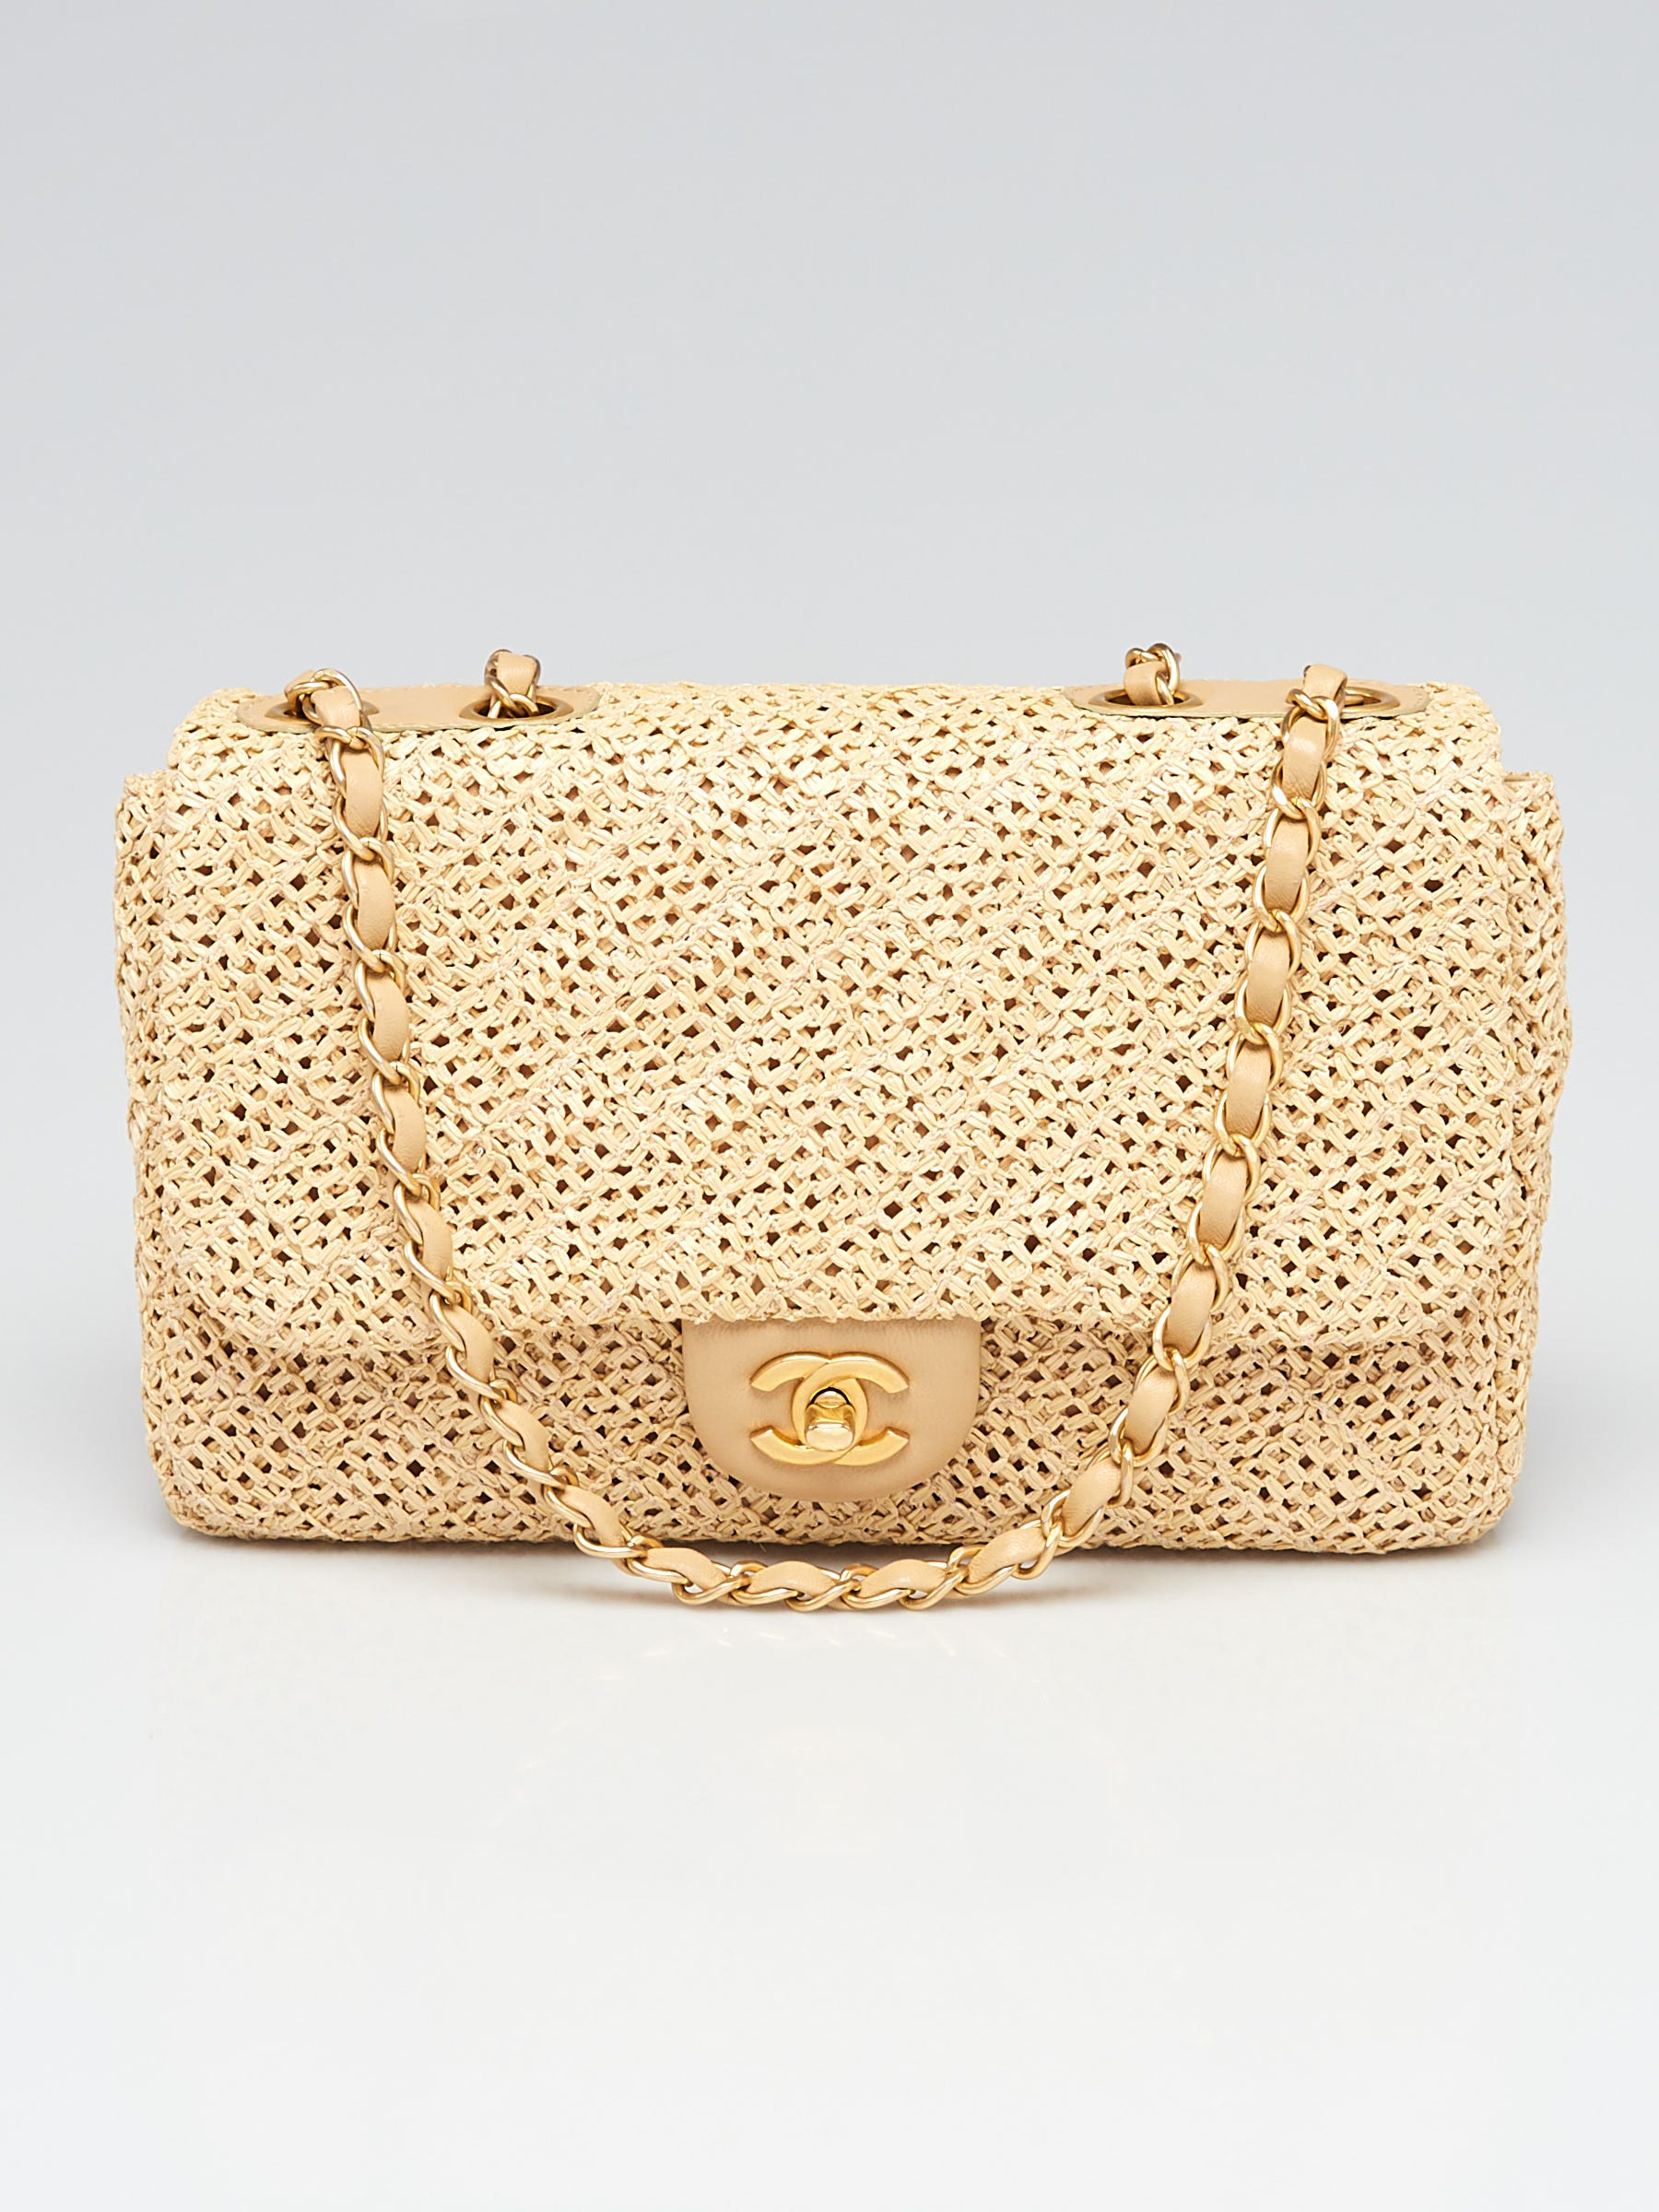 Chanel - Classic Flap Bag - Beige Raffia